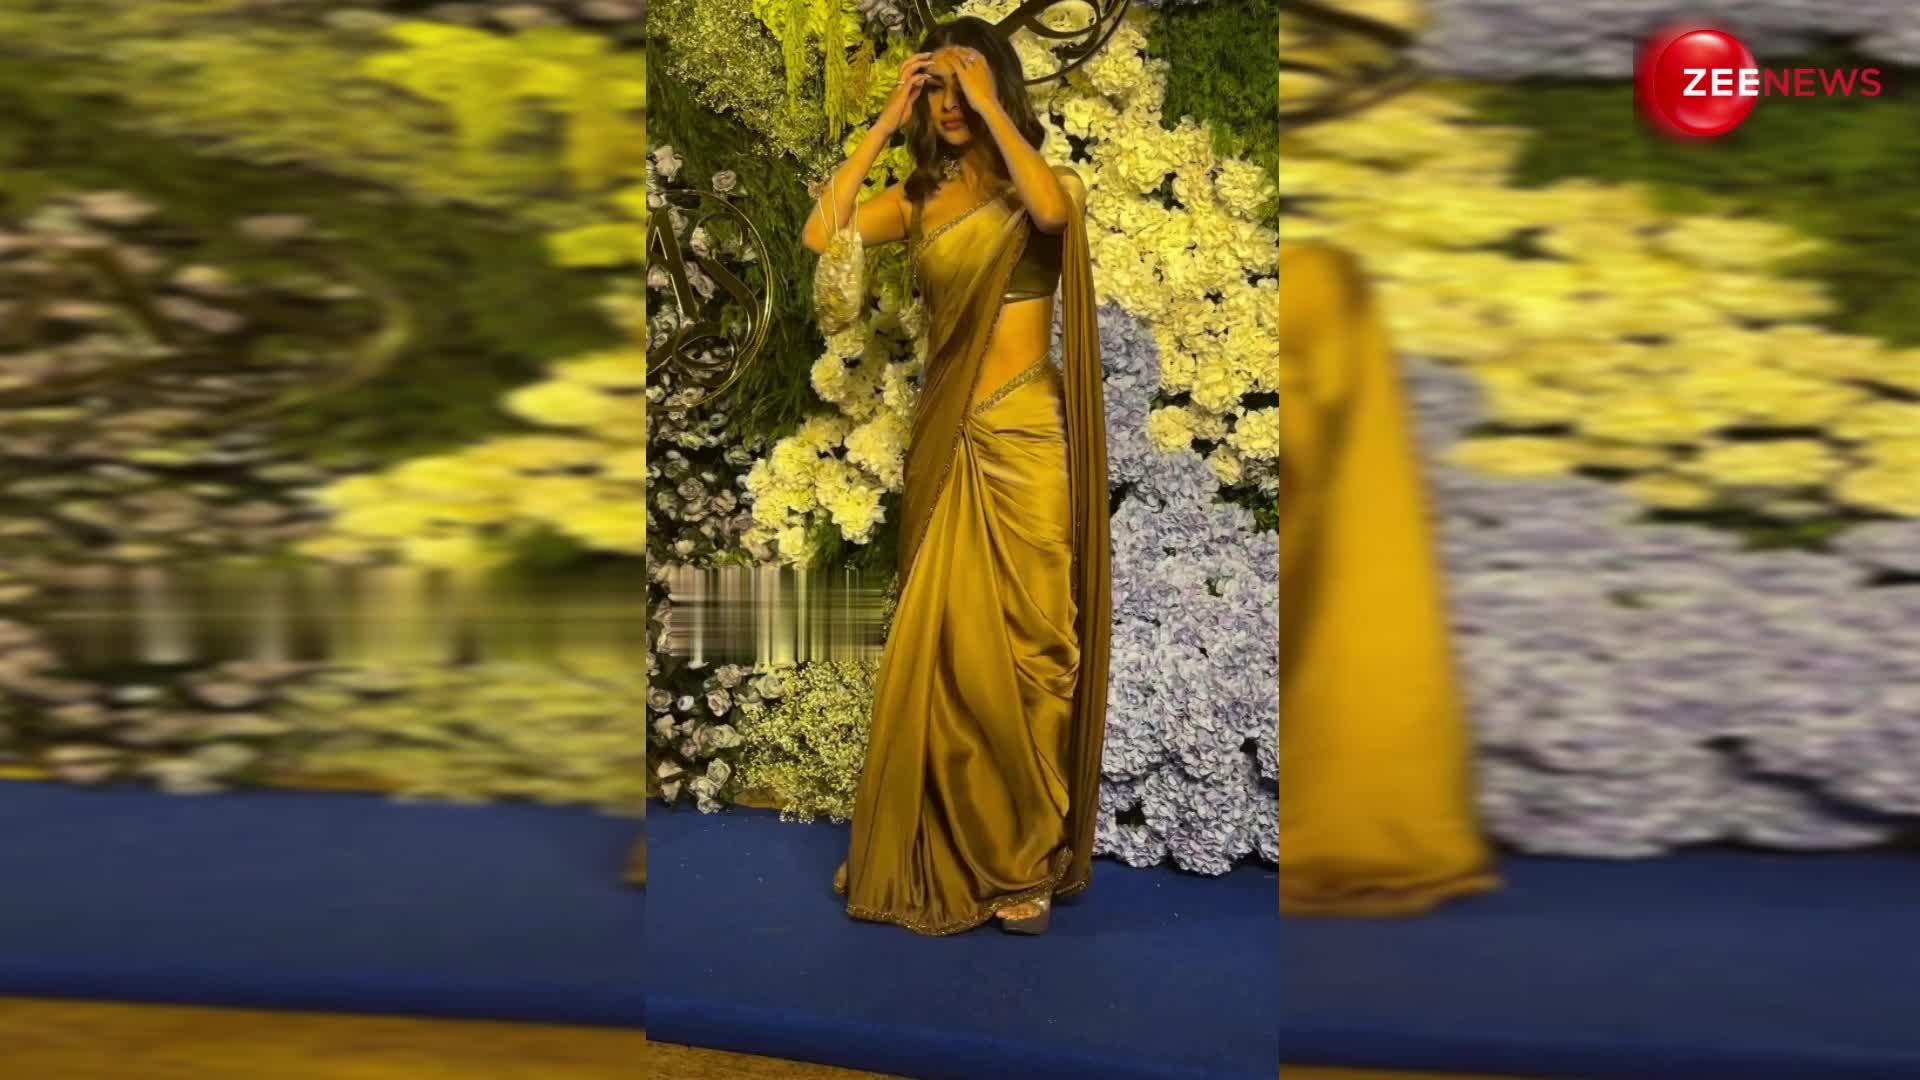 उफ्फ! Mouni Roy ने गोल्डन साड़ी में दिखाया अपना धमाकेदार लुक, एक्ट्रेस की खूबसूरती देखते रह गए फैंस